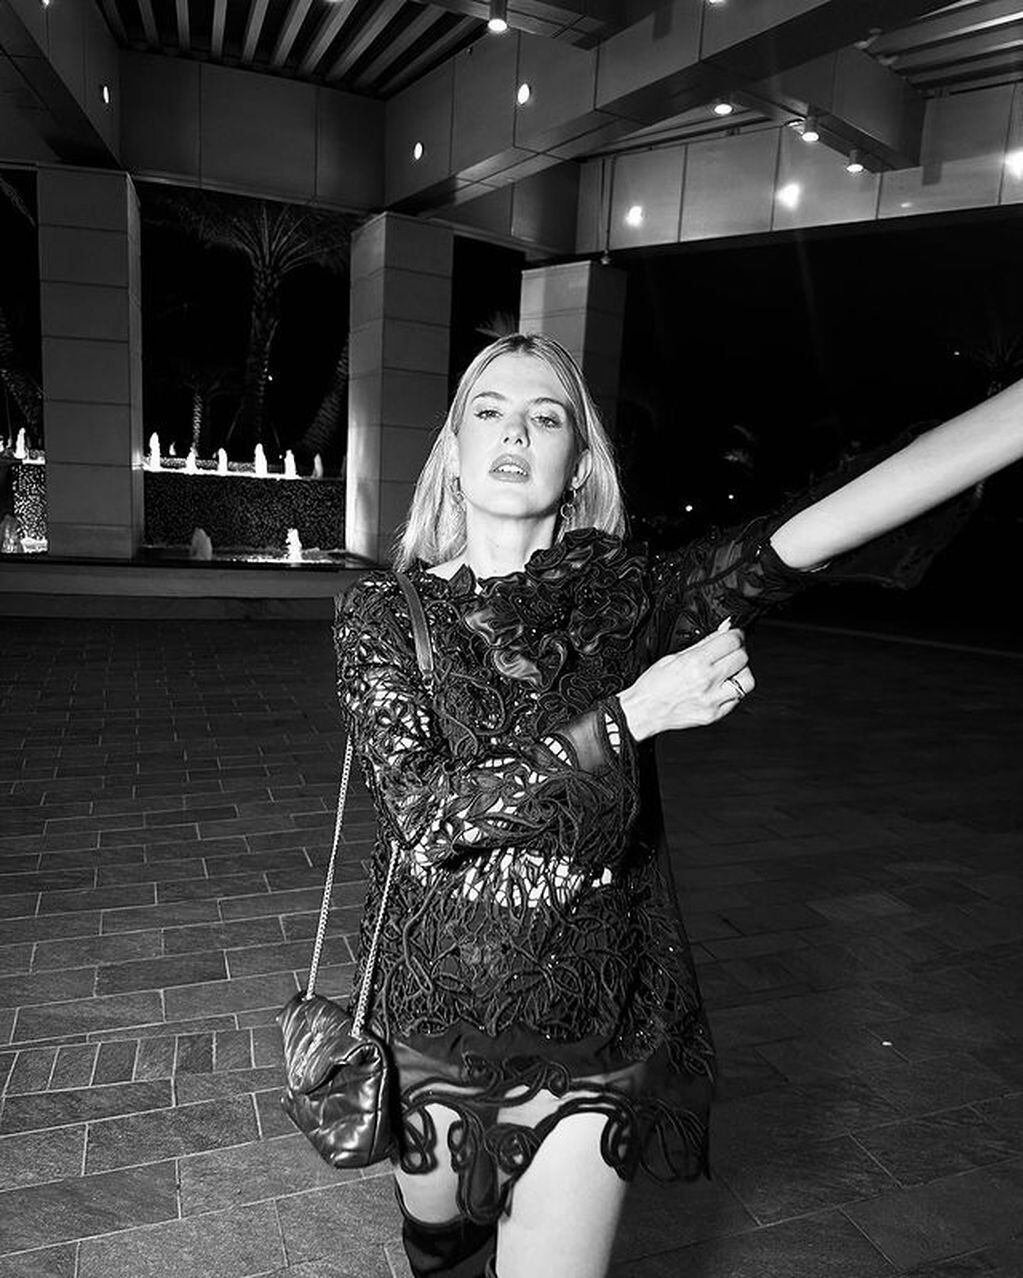 La actriz deslumbró con su impactante vestido negro transparente en las redes sociales. / Foto: Instagram